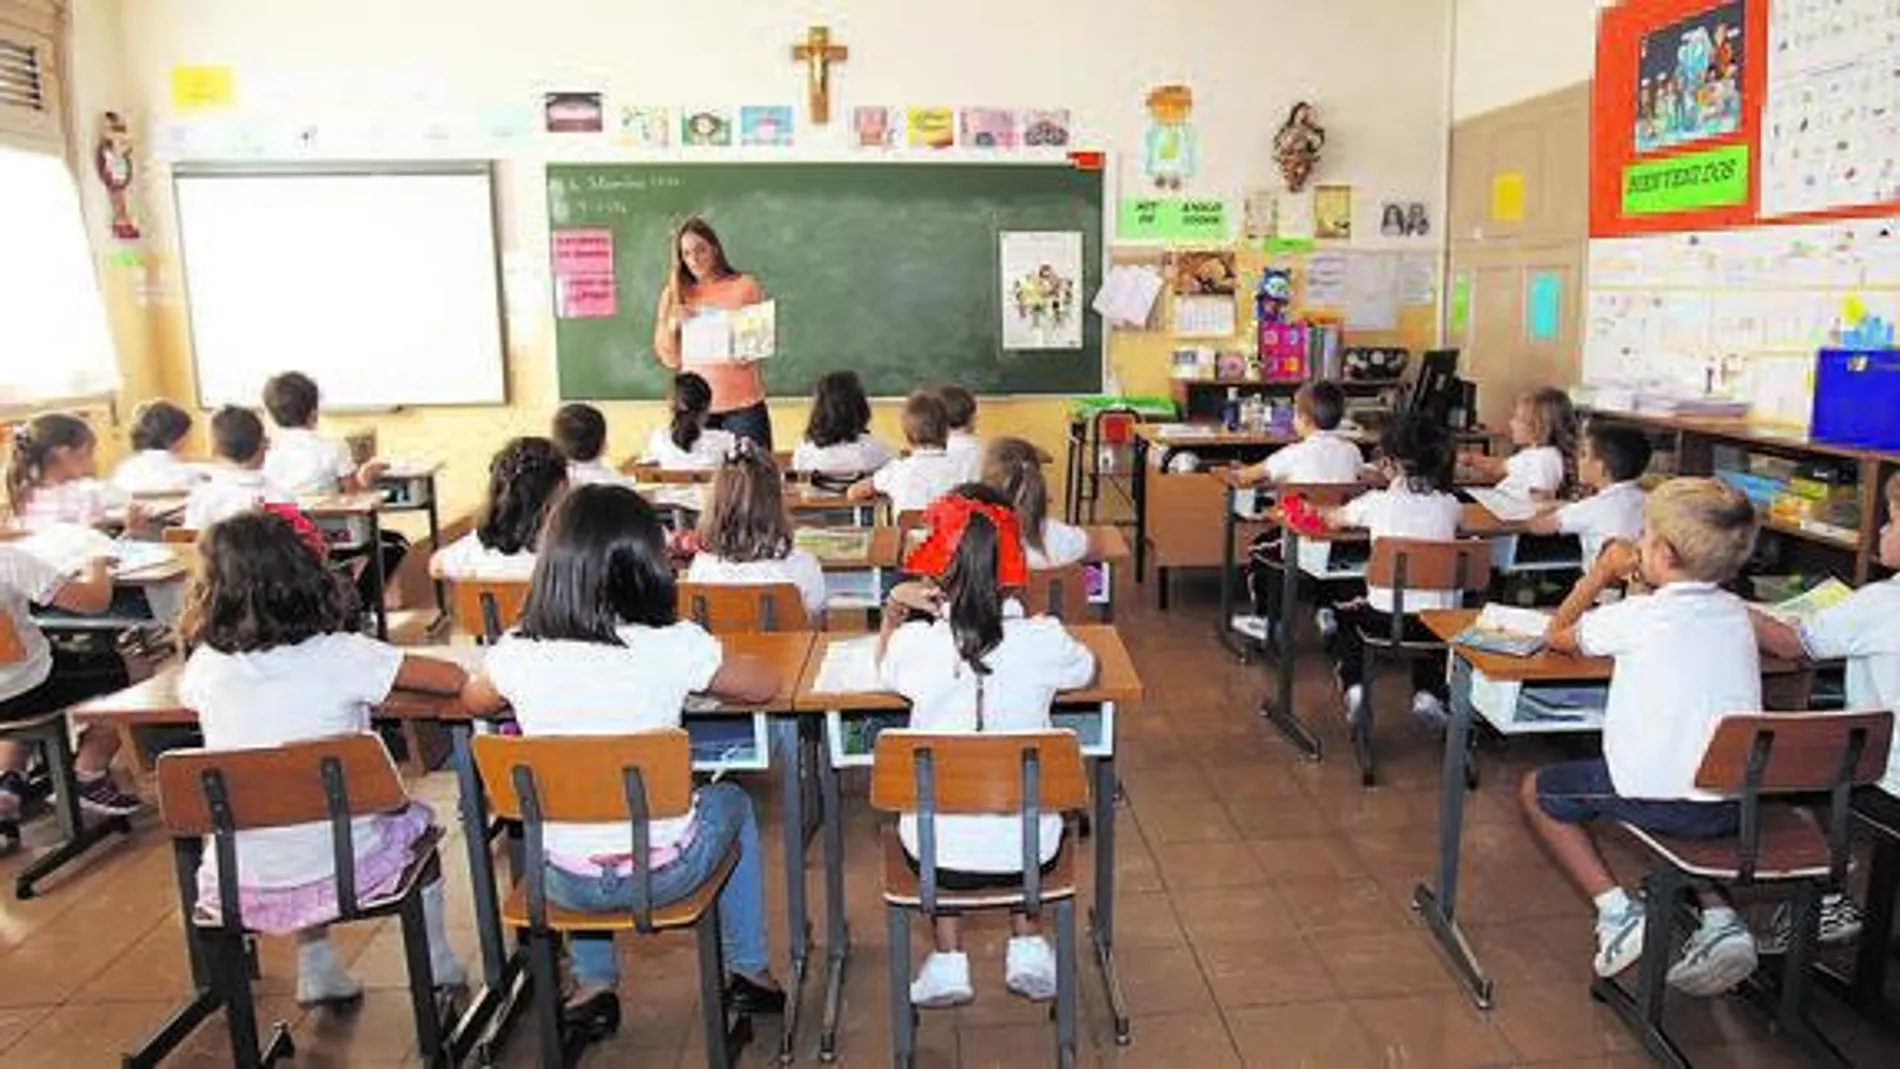 Dos de cada tres alumnos de Castilla y León estudia religión en las aulas, once puntos más que la media nacional